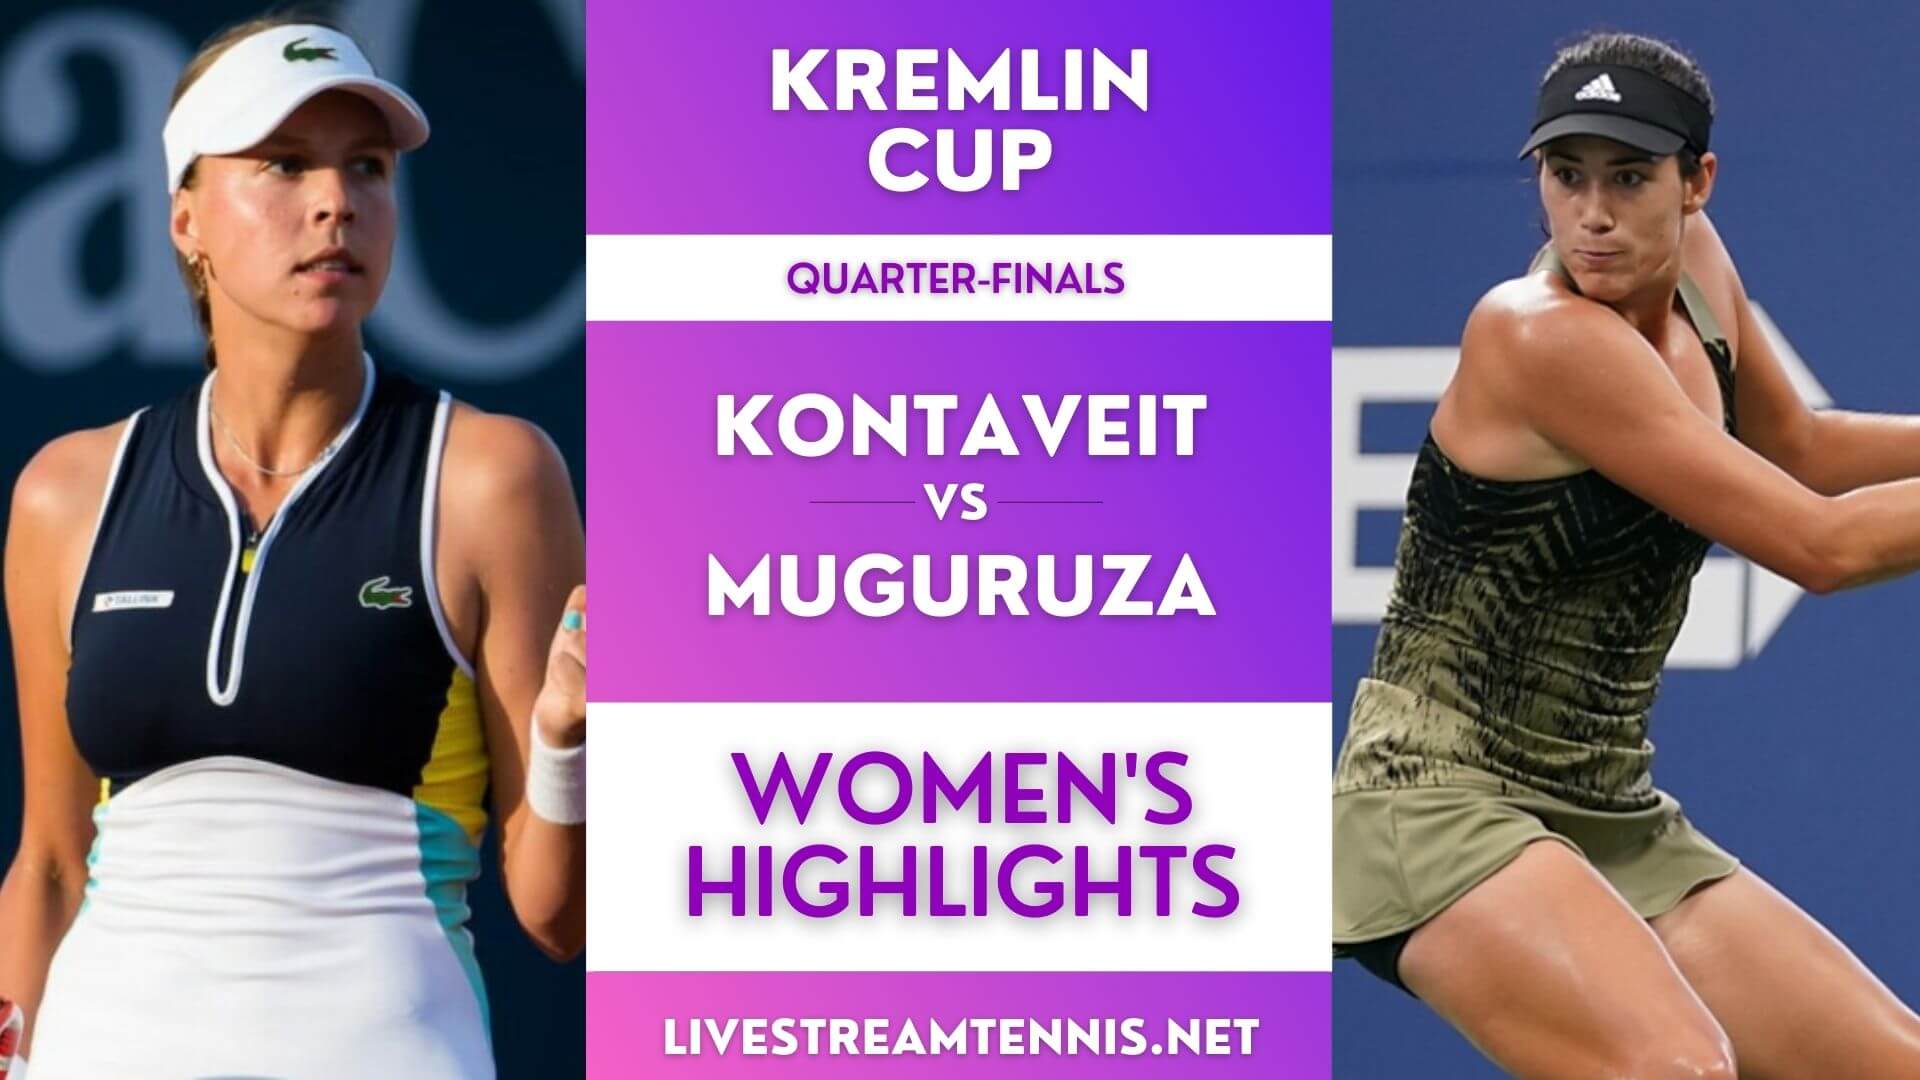 Kremlin Cup Women Quarter Final 3 Highlights 2021